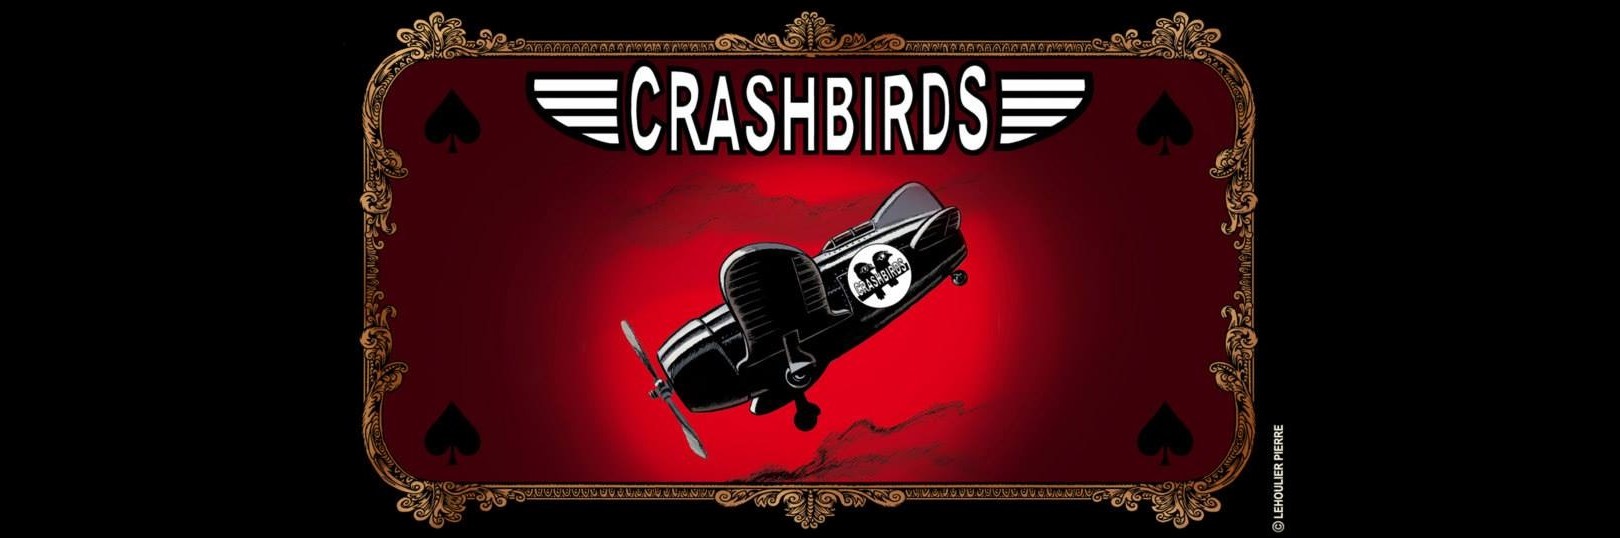 Crashbirds